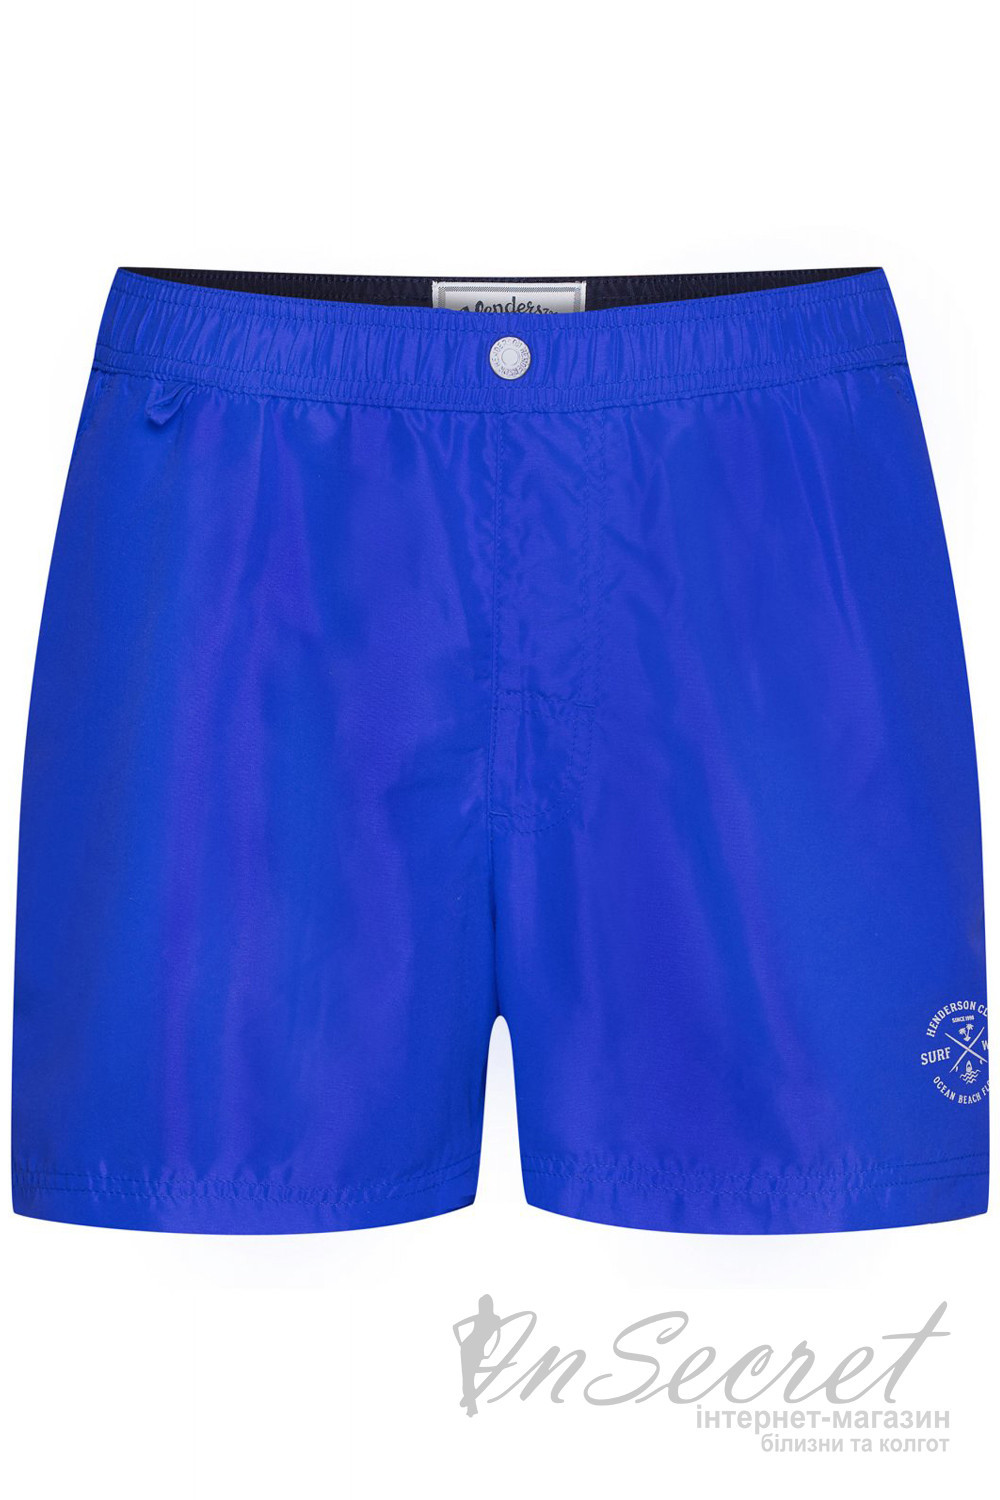 Чоловічі пляжні шорти Henderson 38860 SHAFT Blue